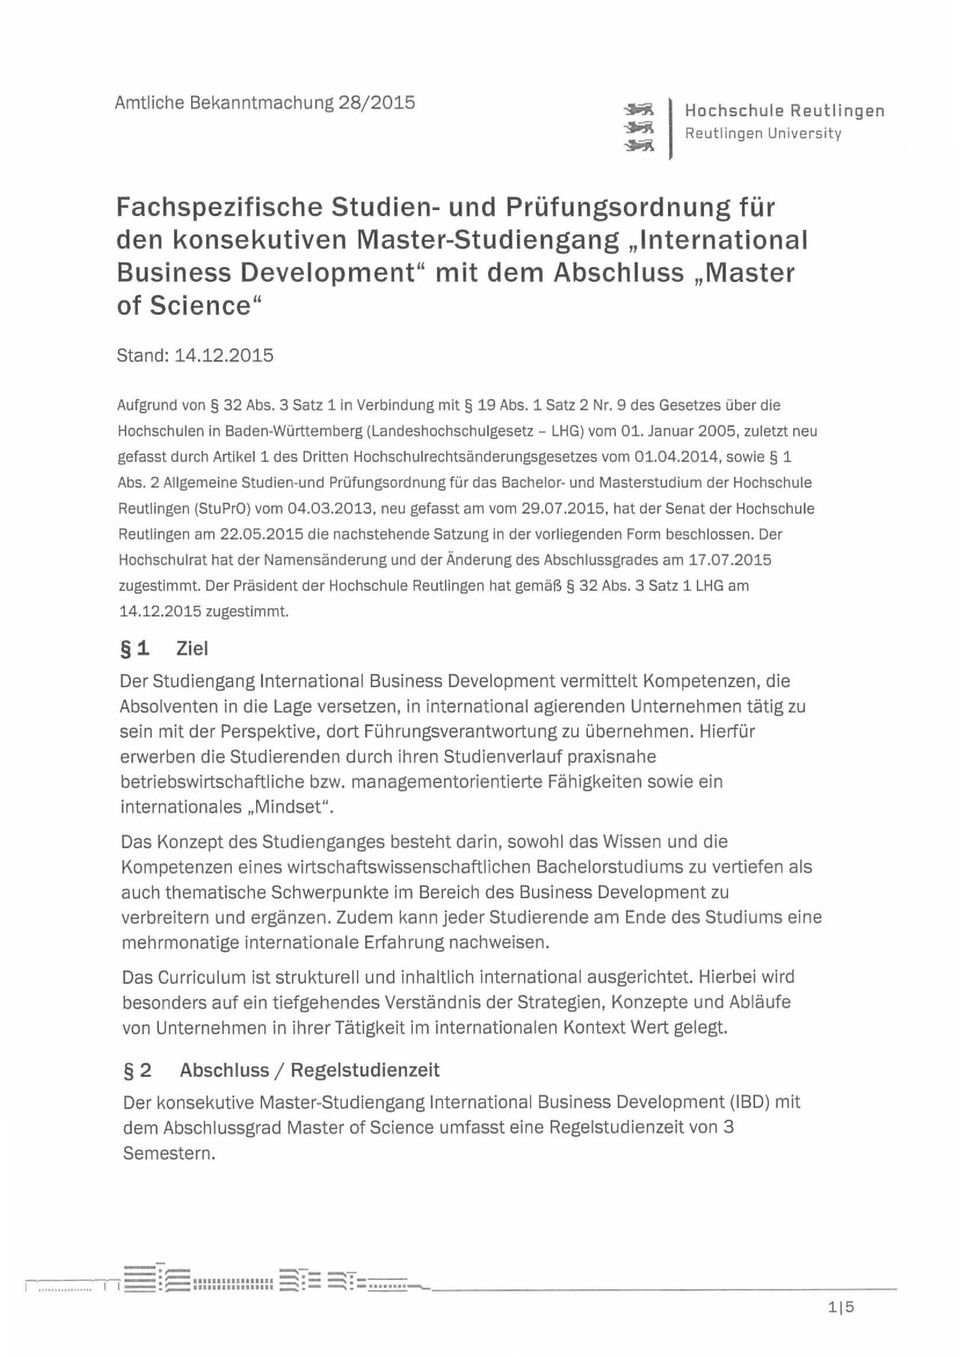 3 Satz 1 in Verbindung mit 19 Abs. 1 Satz 2 Nr. 9 des Gesetzes über die Hochschulen in Baden-Württemberg (Landeshochschulgesetz - LHG) vom 01.